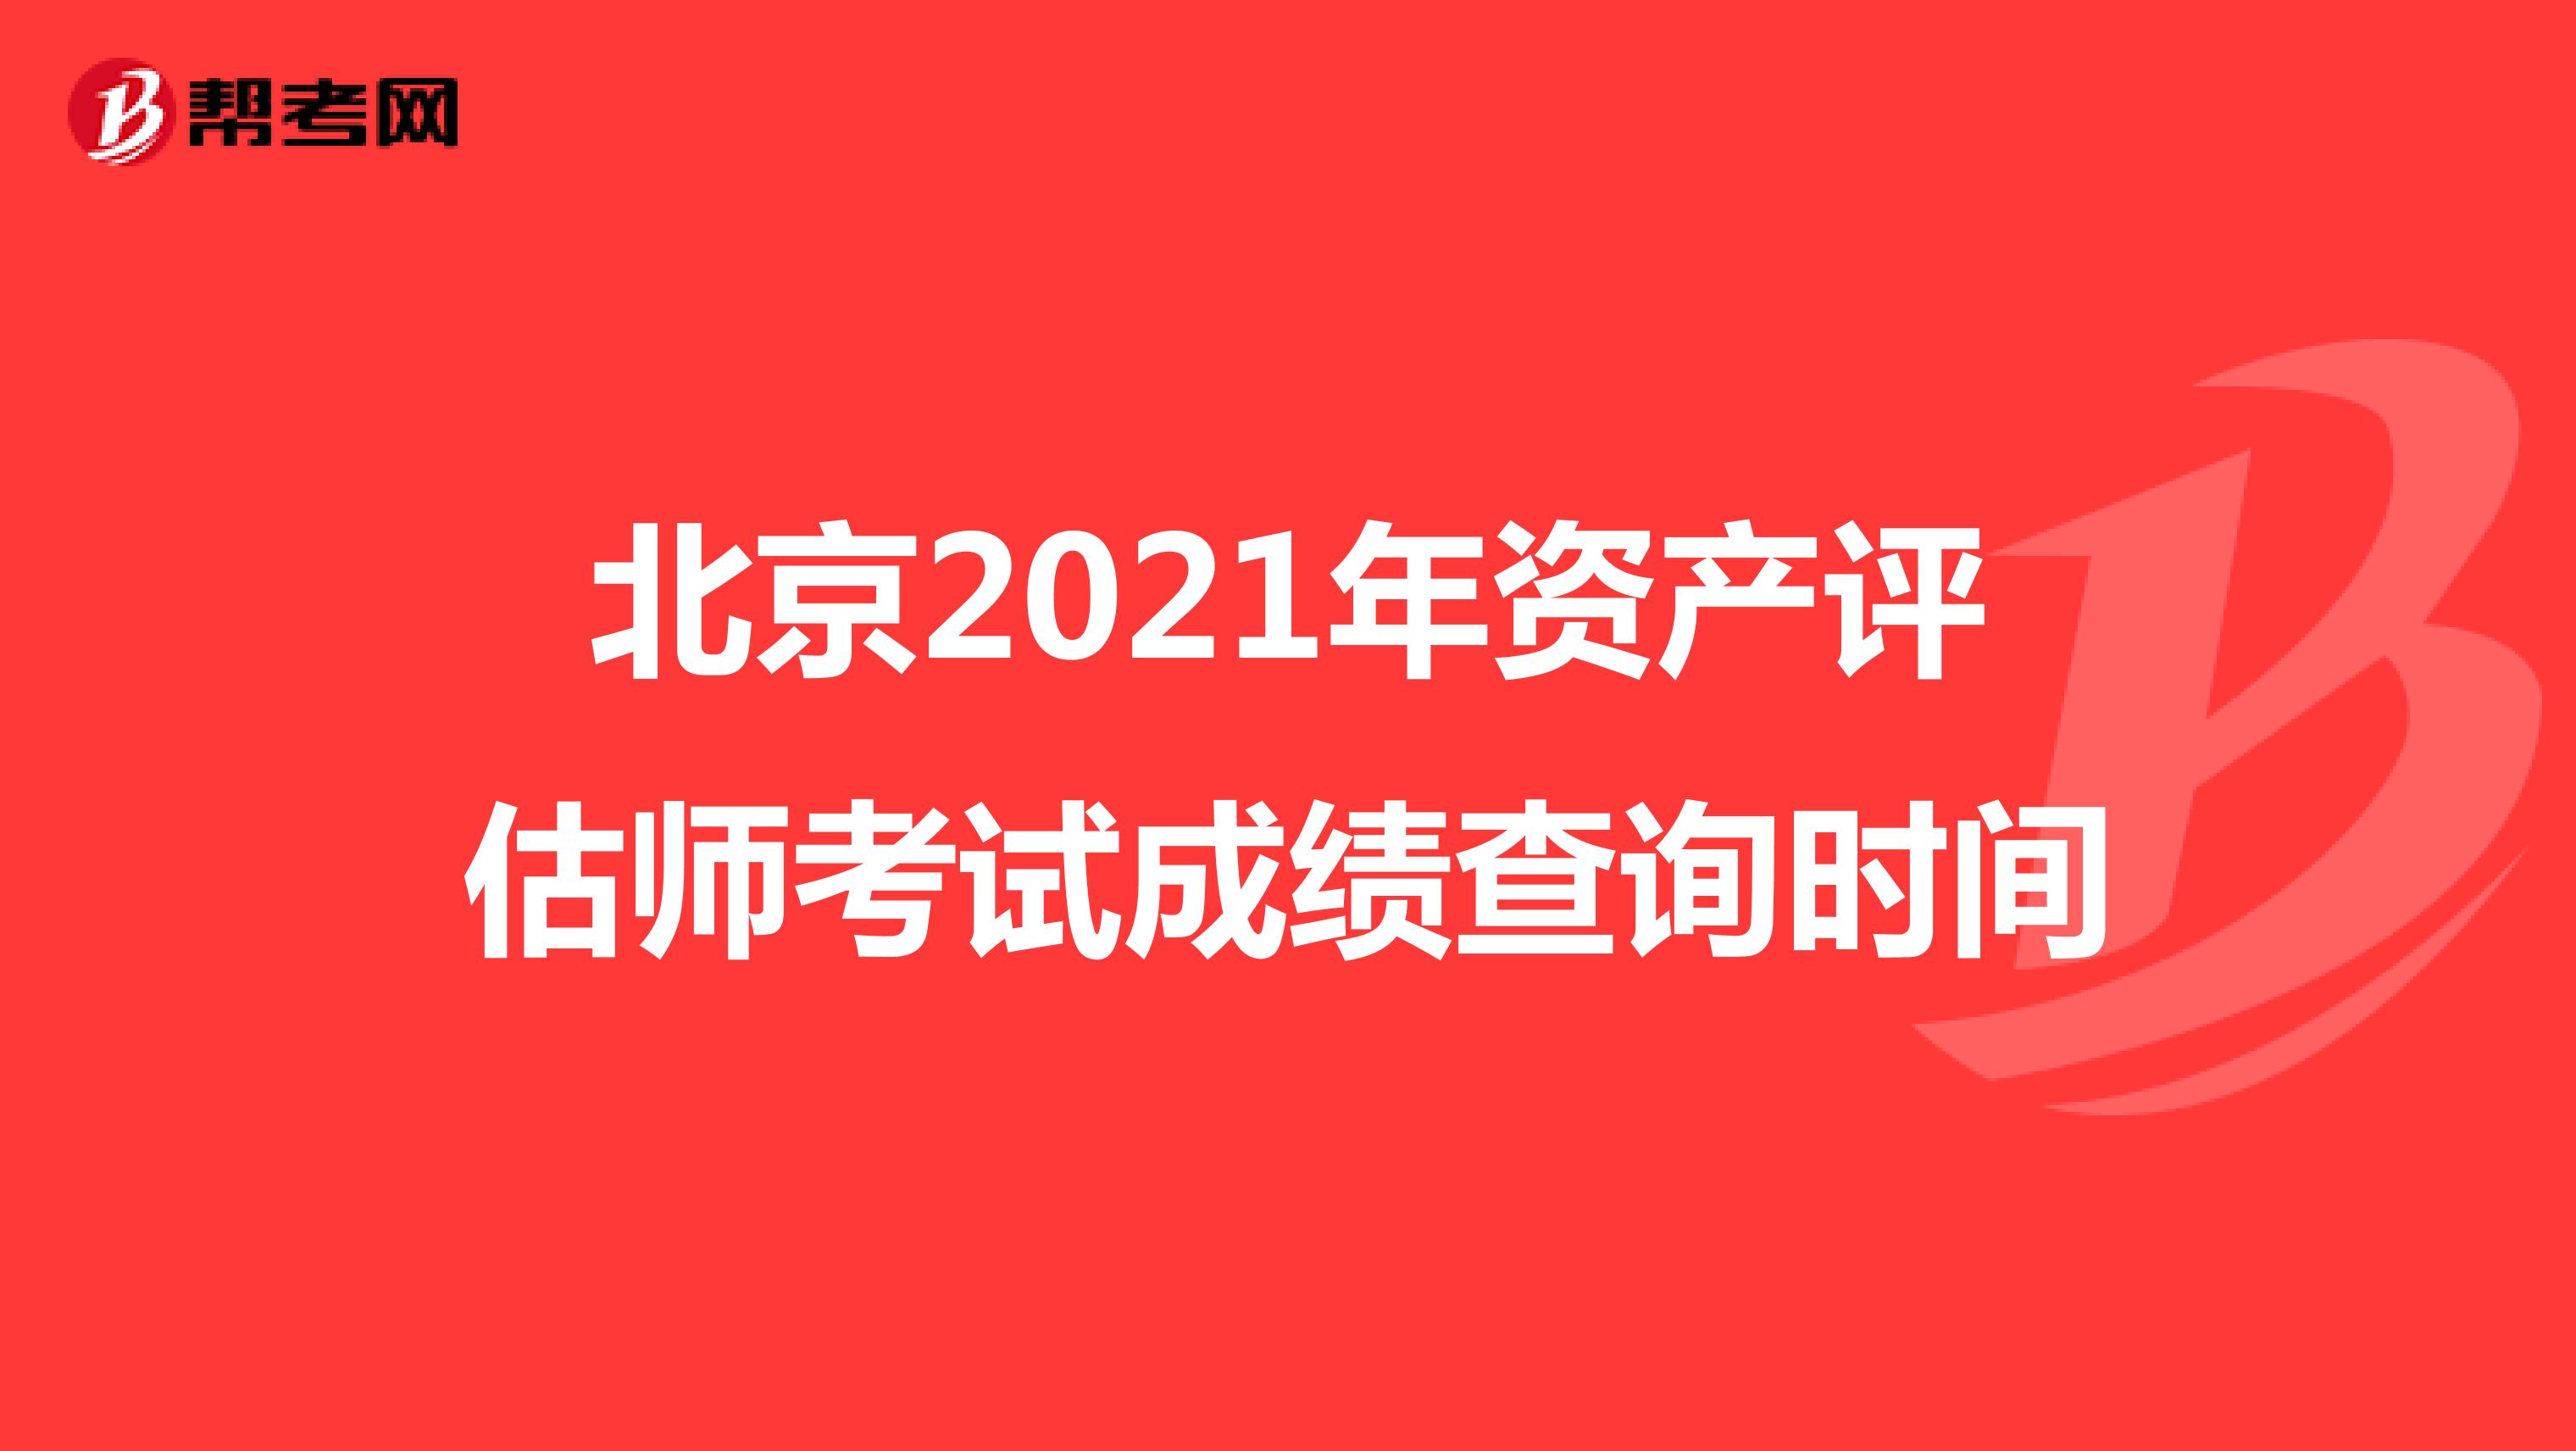 北京2021年资产评估师考试成绩查询时间